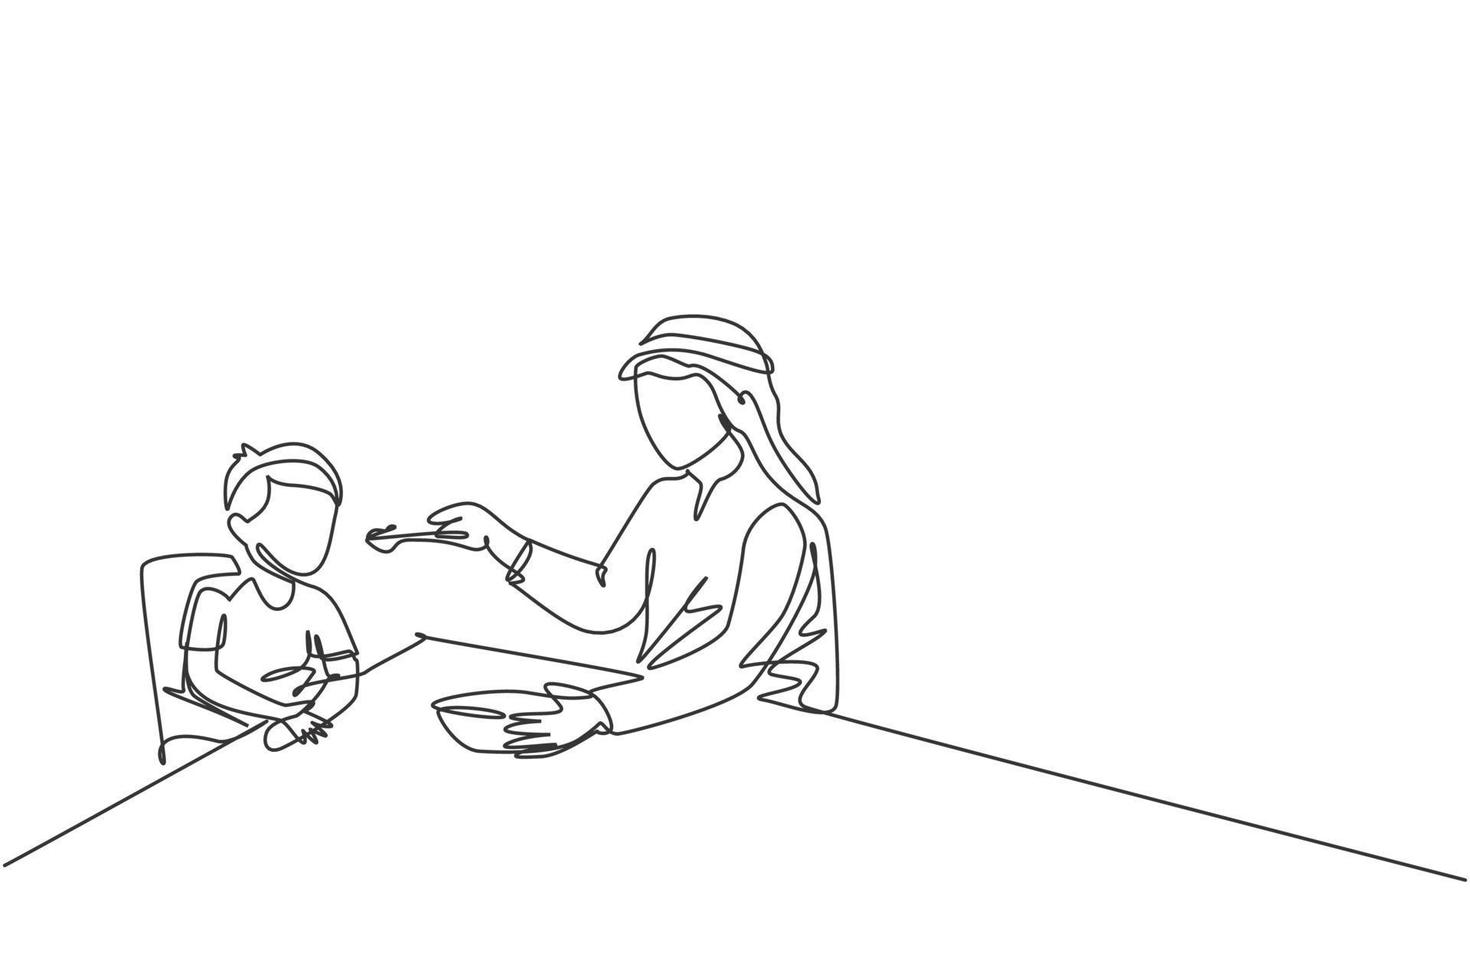 único desenho de linha contínua do jovem pai islâmico dando comida para seu filho na mesa de jantar em casa. conceito de paternidade de família feliz muçulmana árabe. ilustração em vetor desenho desenho de uma linha na moda